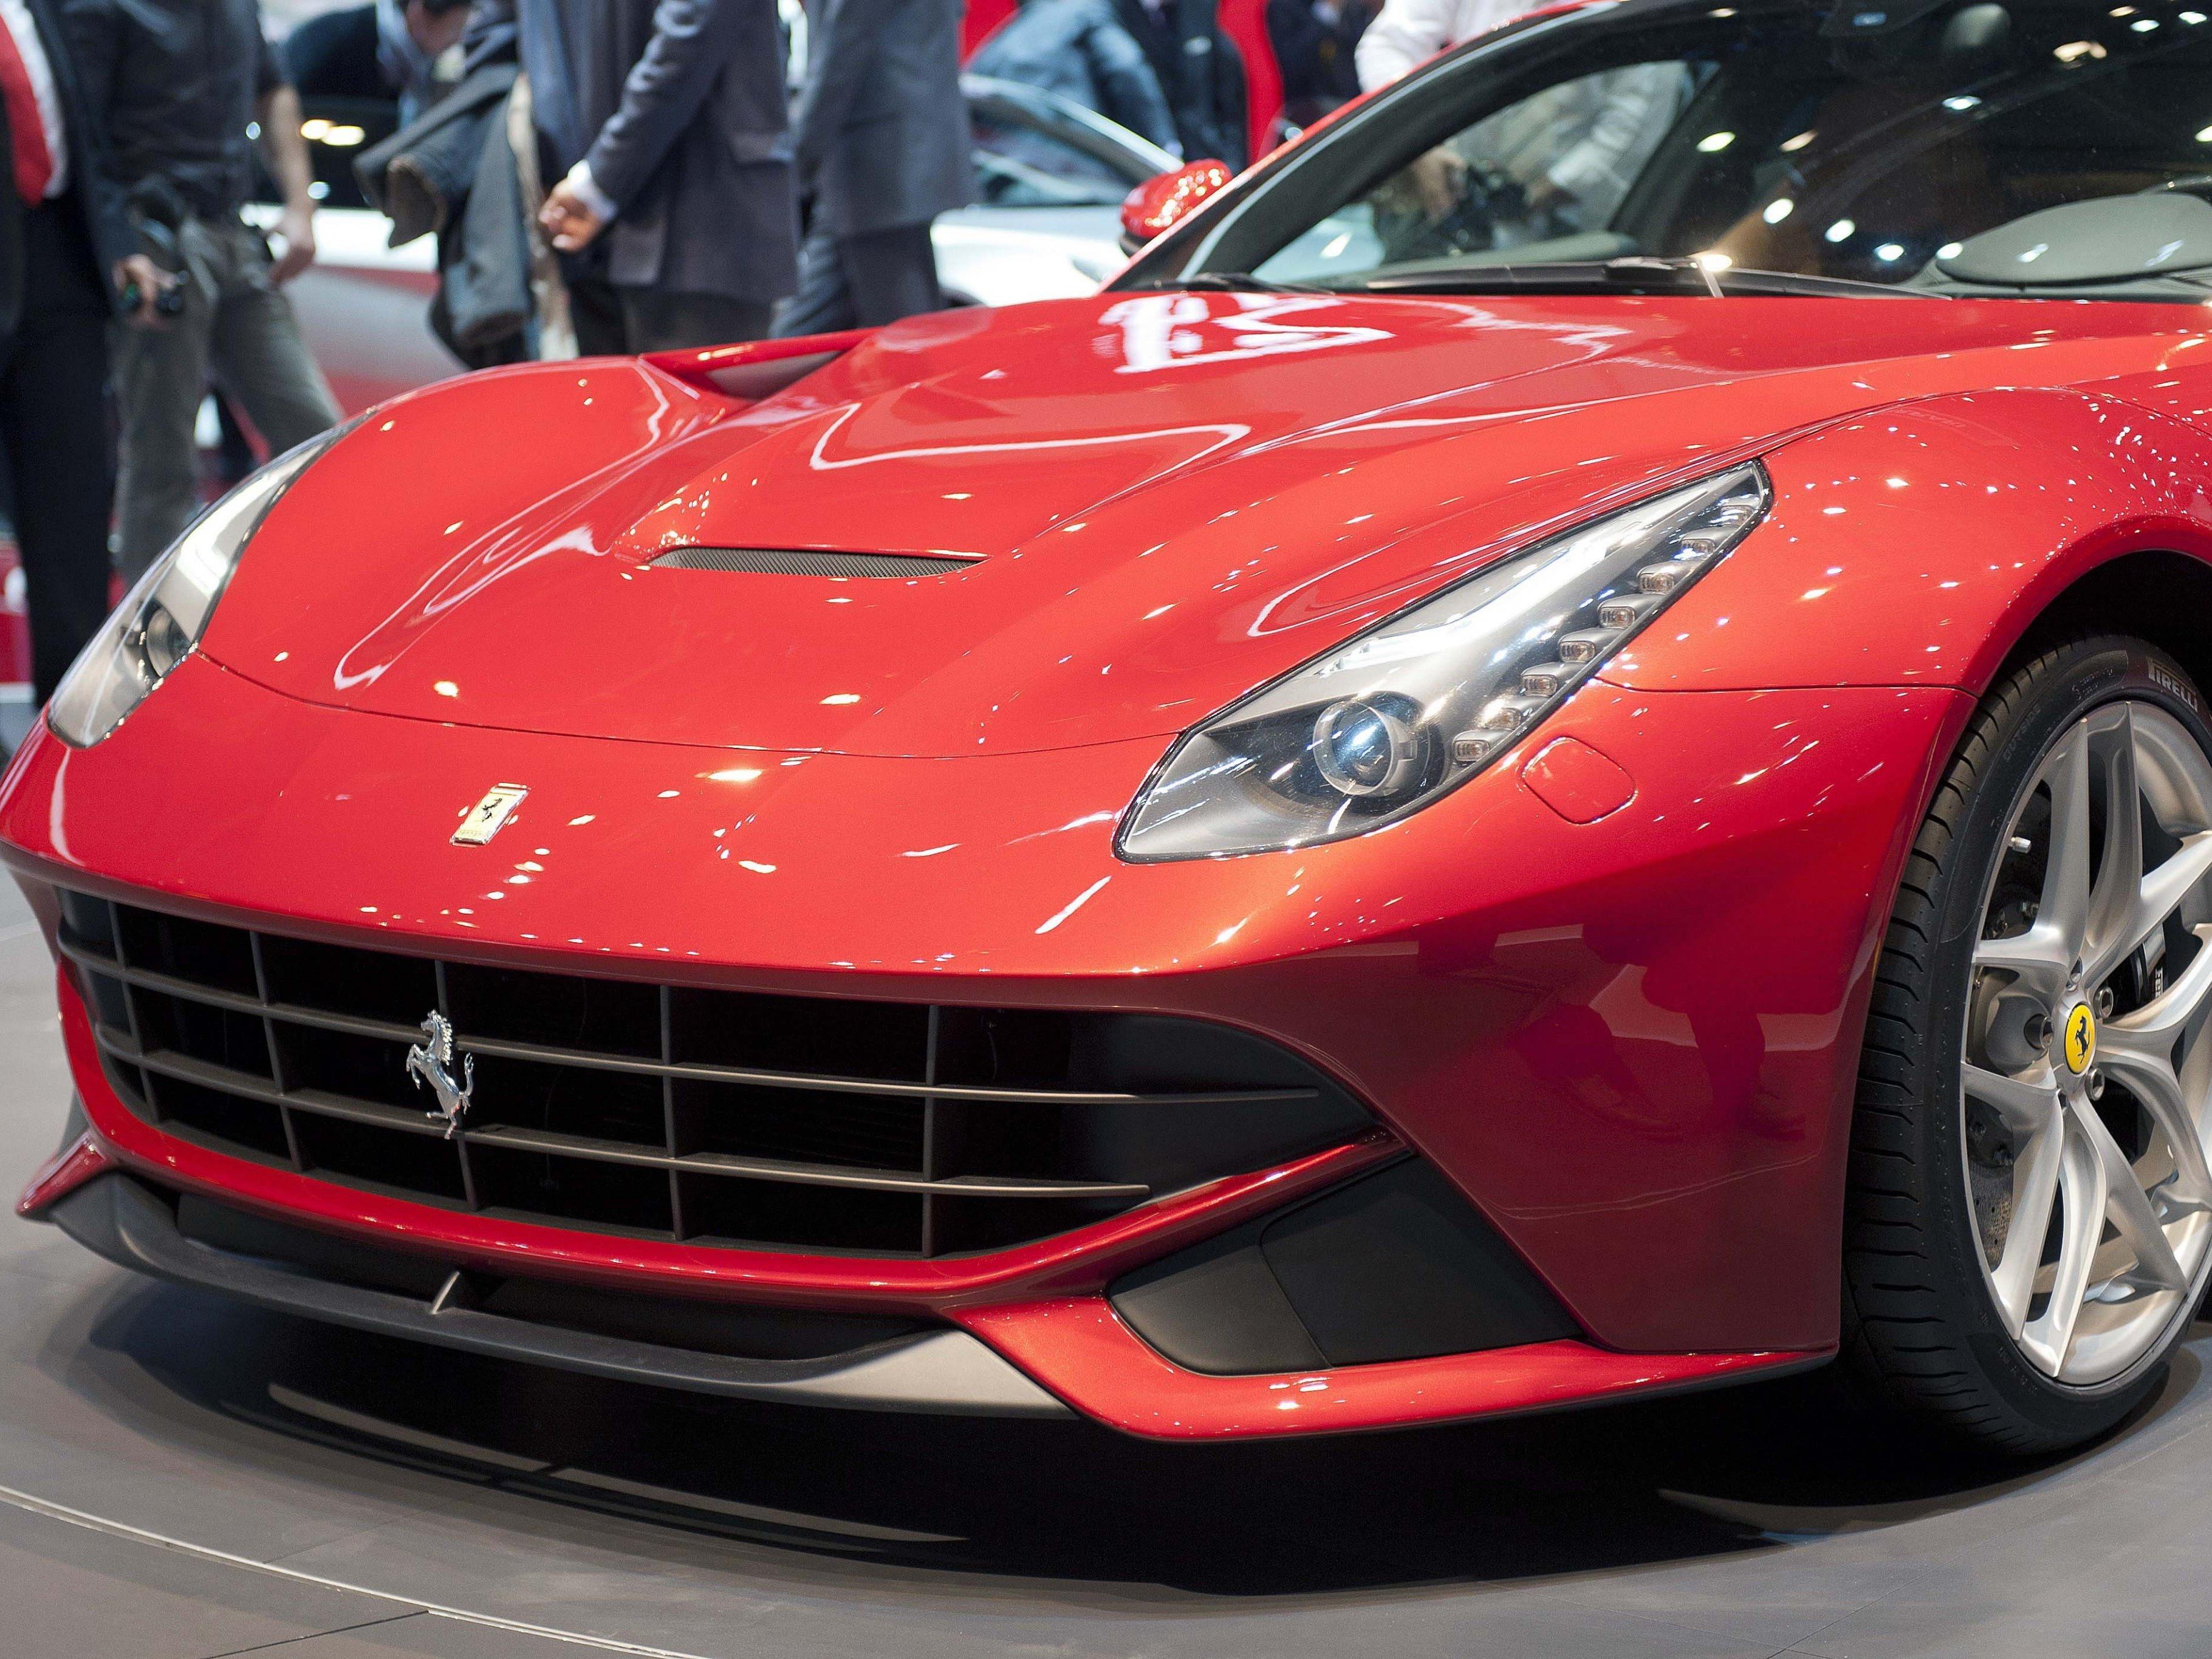 Bei einem Golfturnier in Prag hätte der Präsident des Verwaltungsrats des Schweizer Unternehmens, dem der Ferrari gehört, den 740 PS starken Sportwagen als Werbung für seine Firma verwenden wollen.